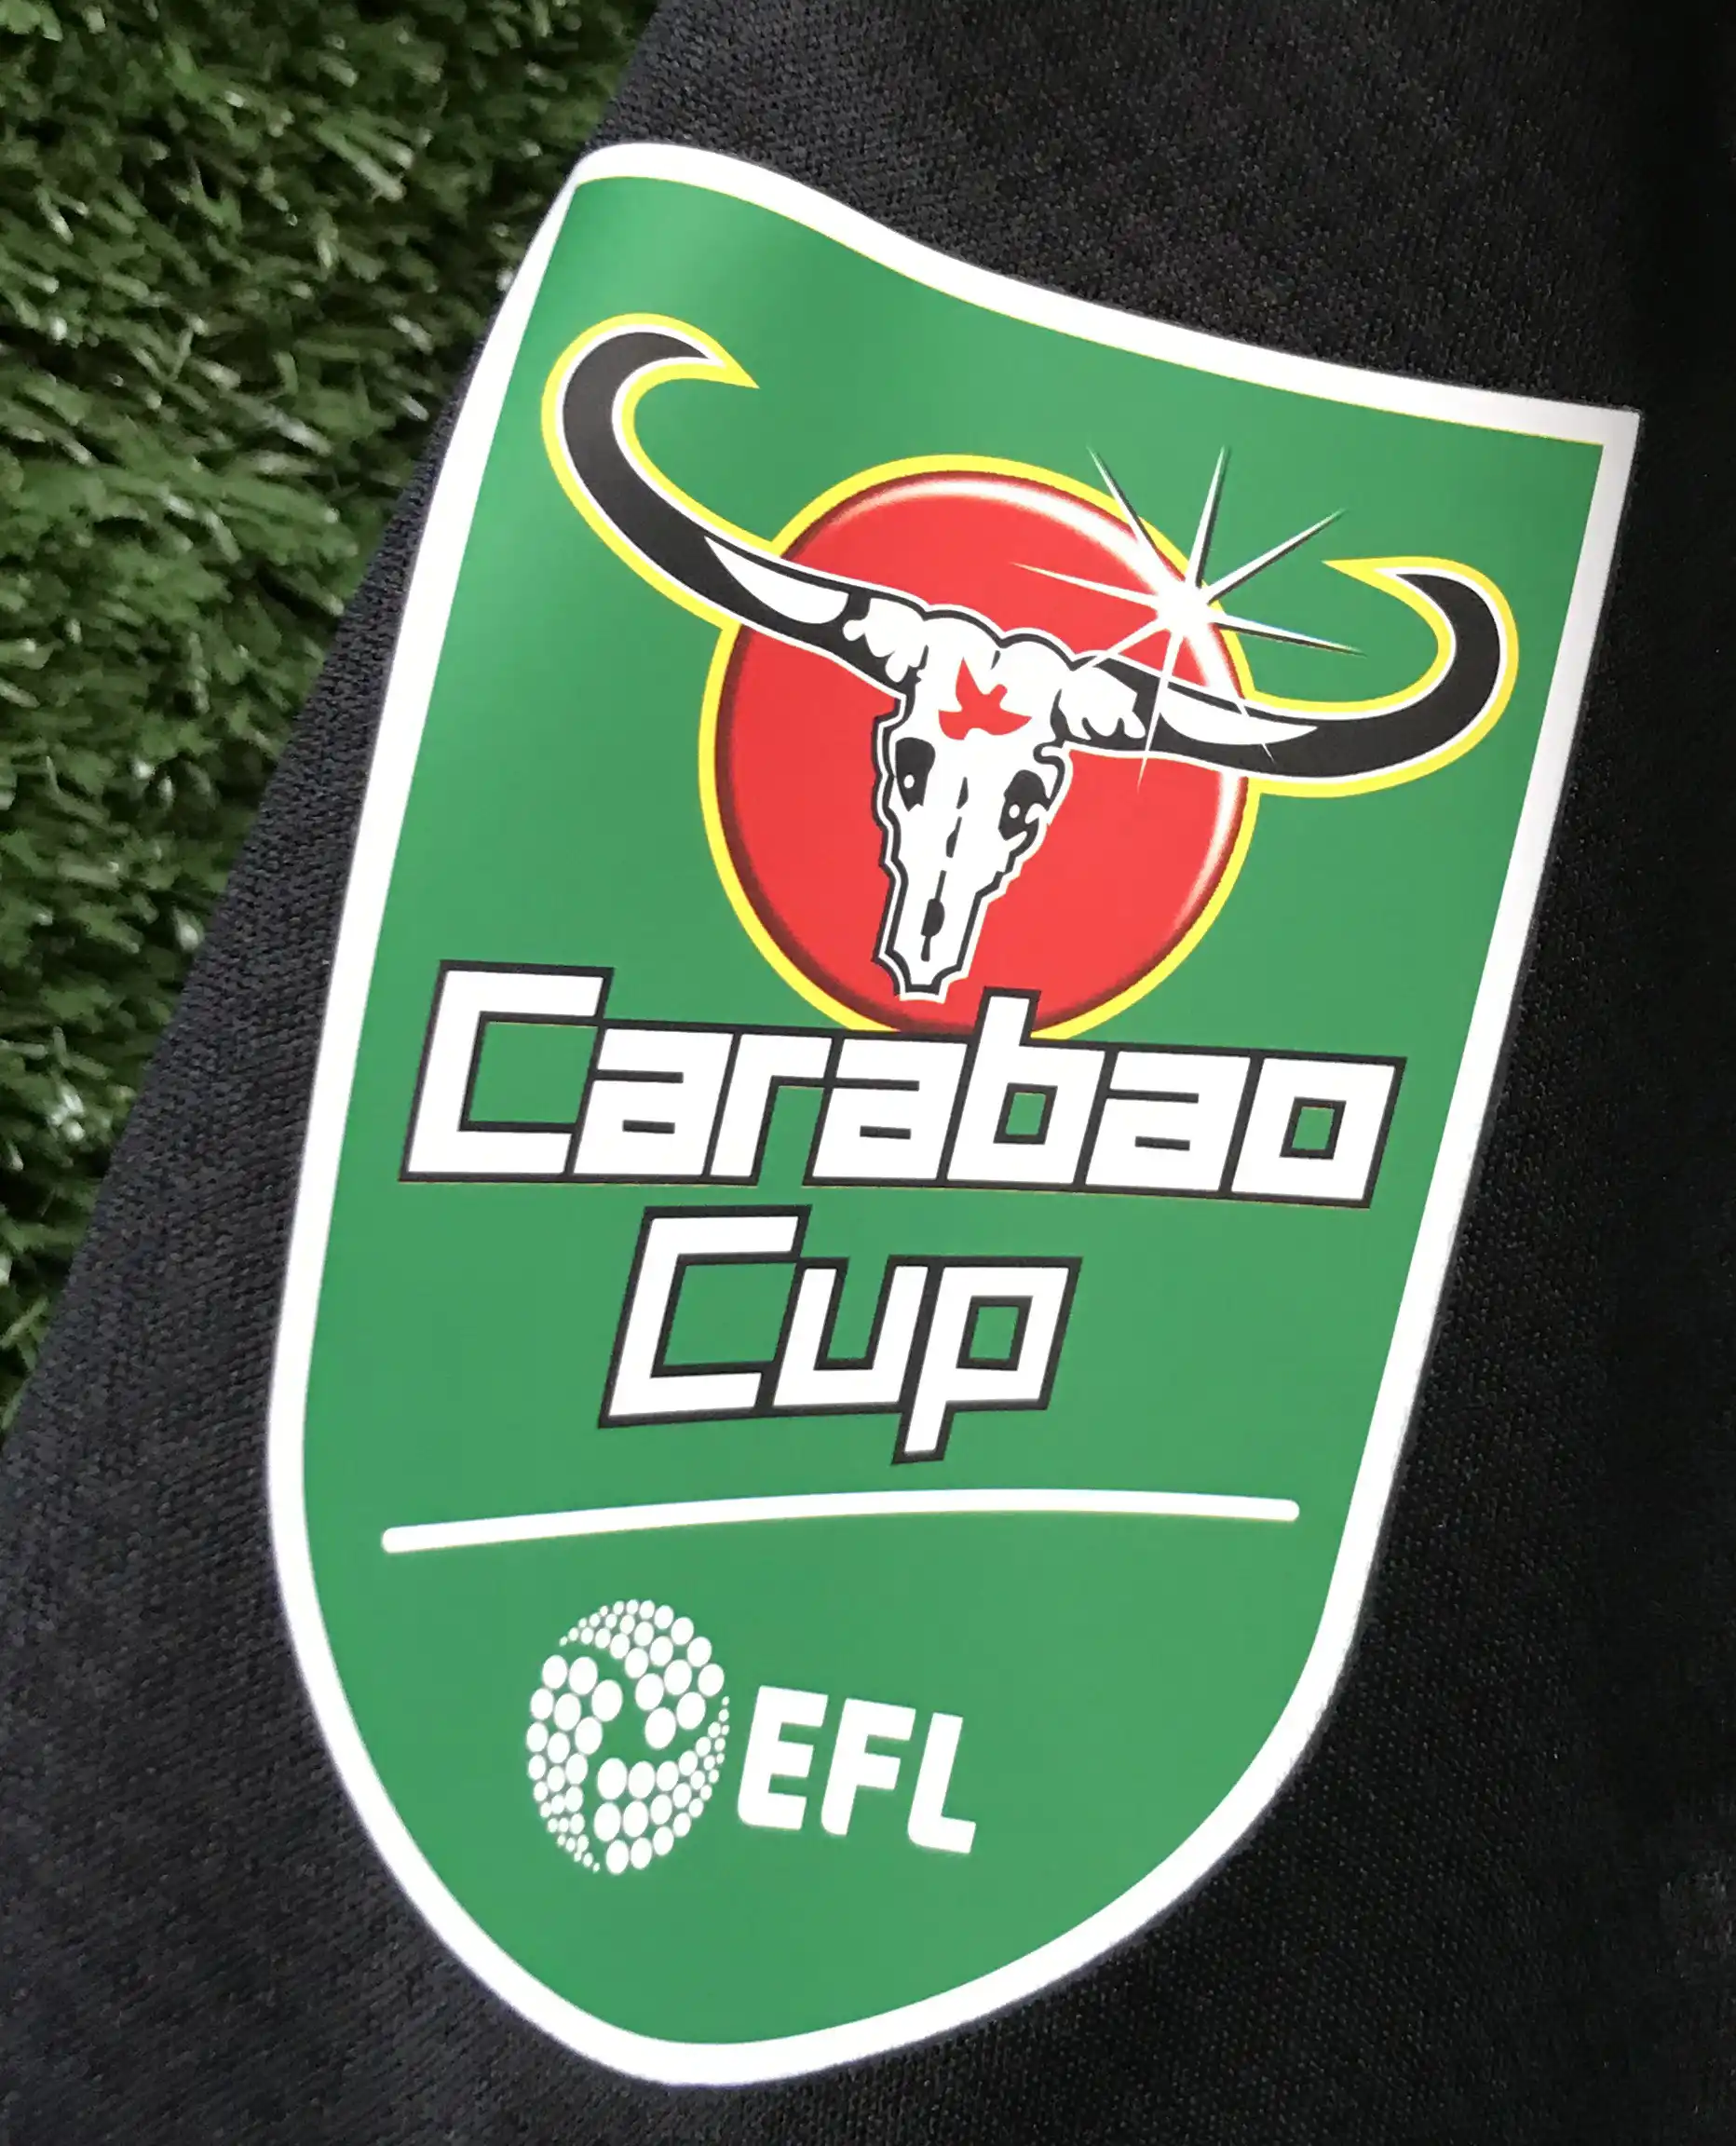 2020 Carabao Cup Final Match Details